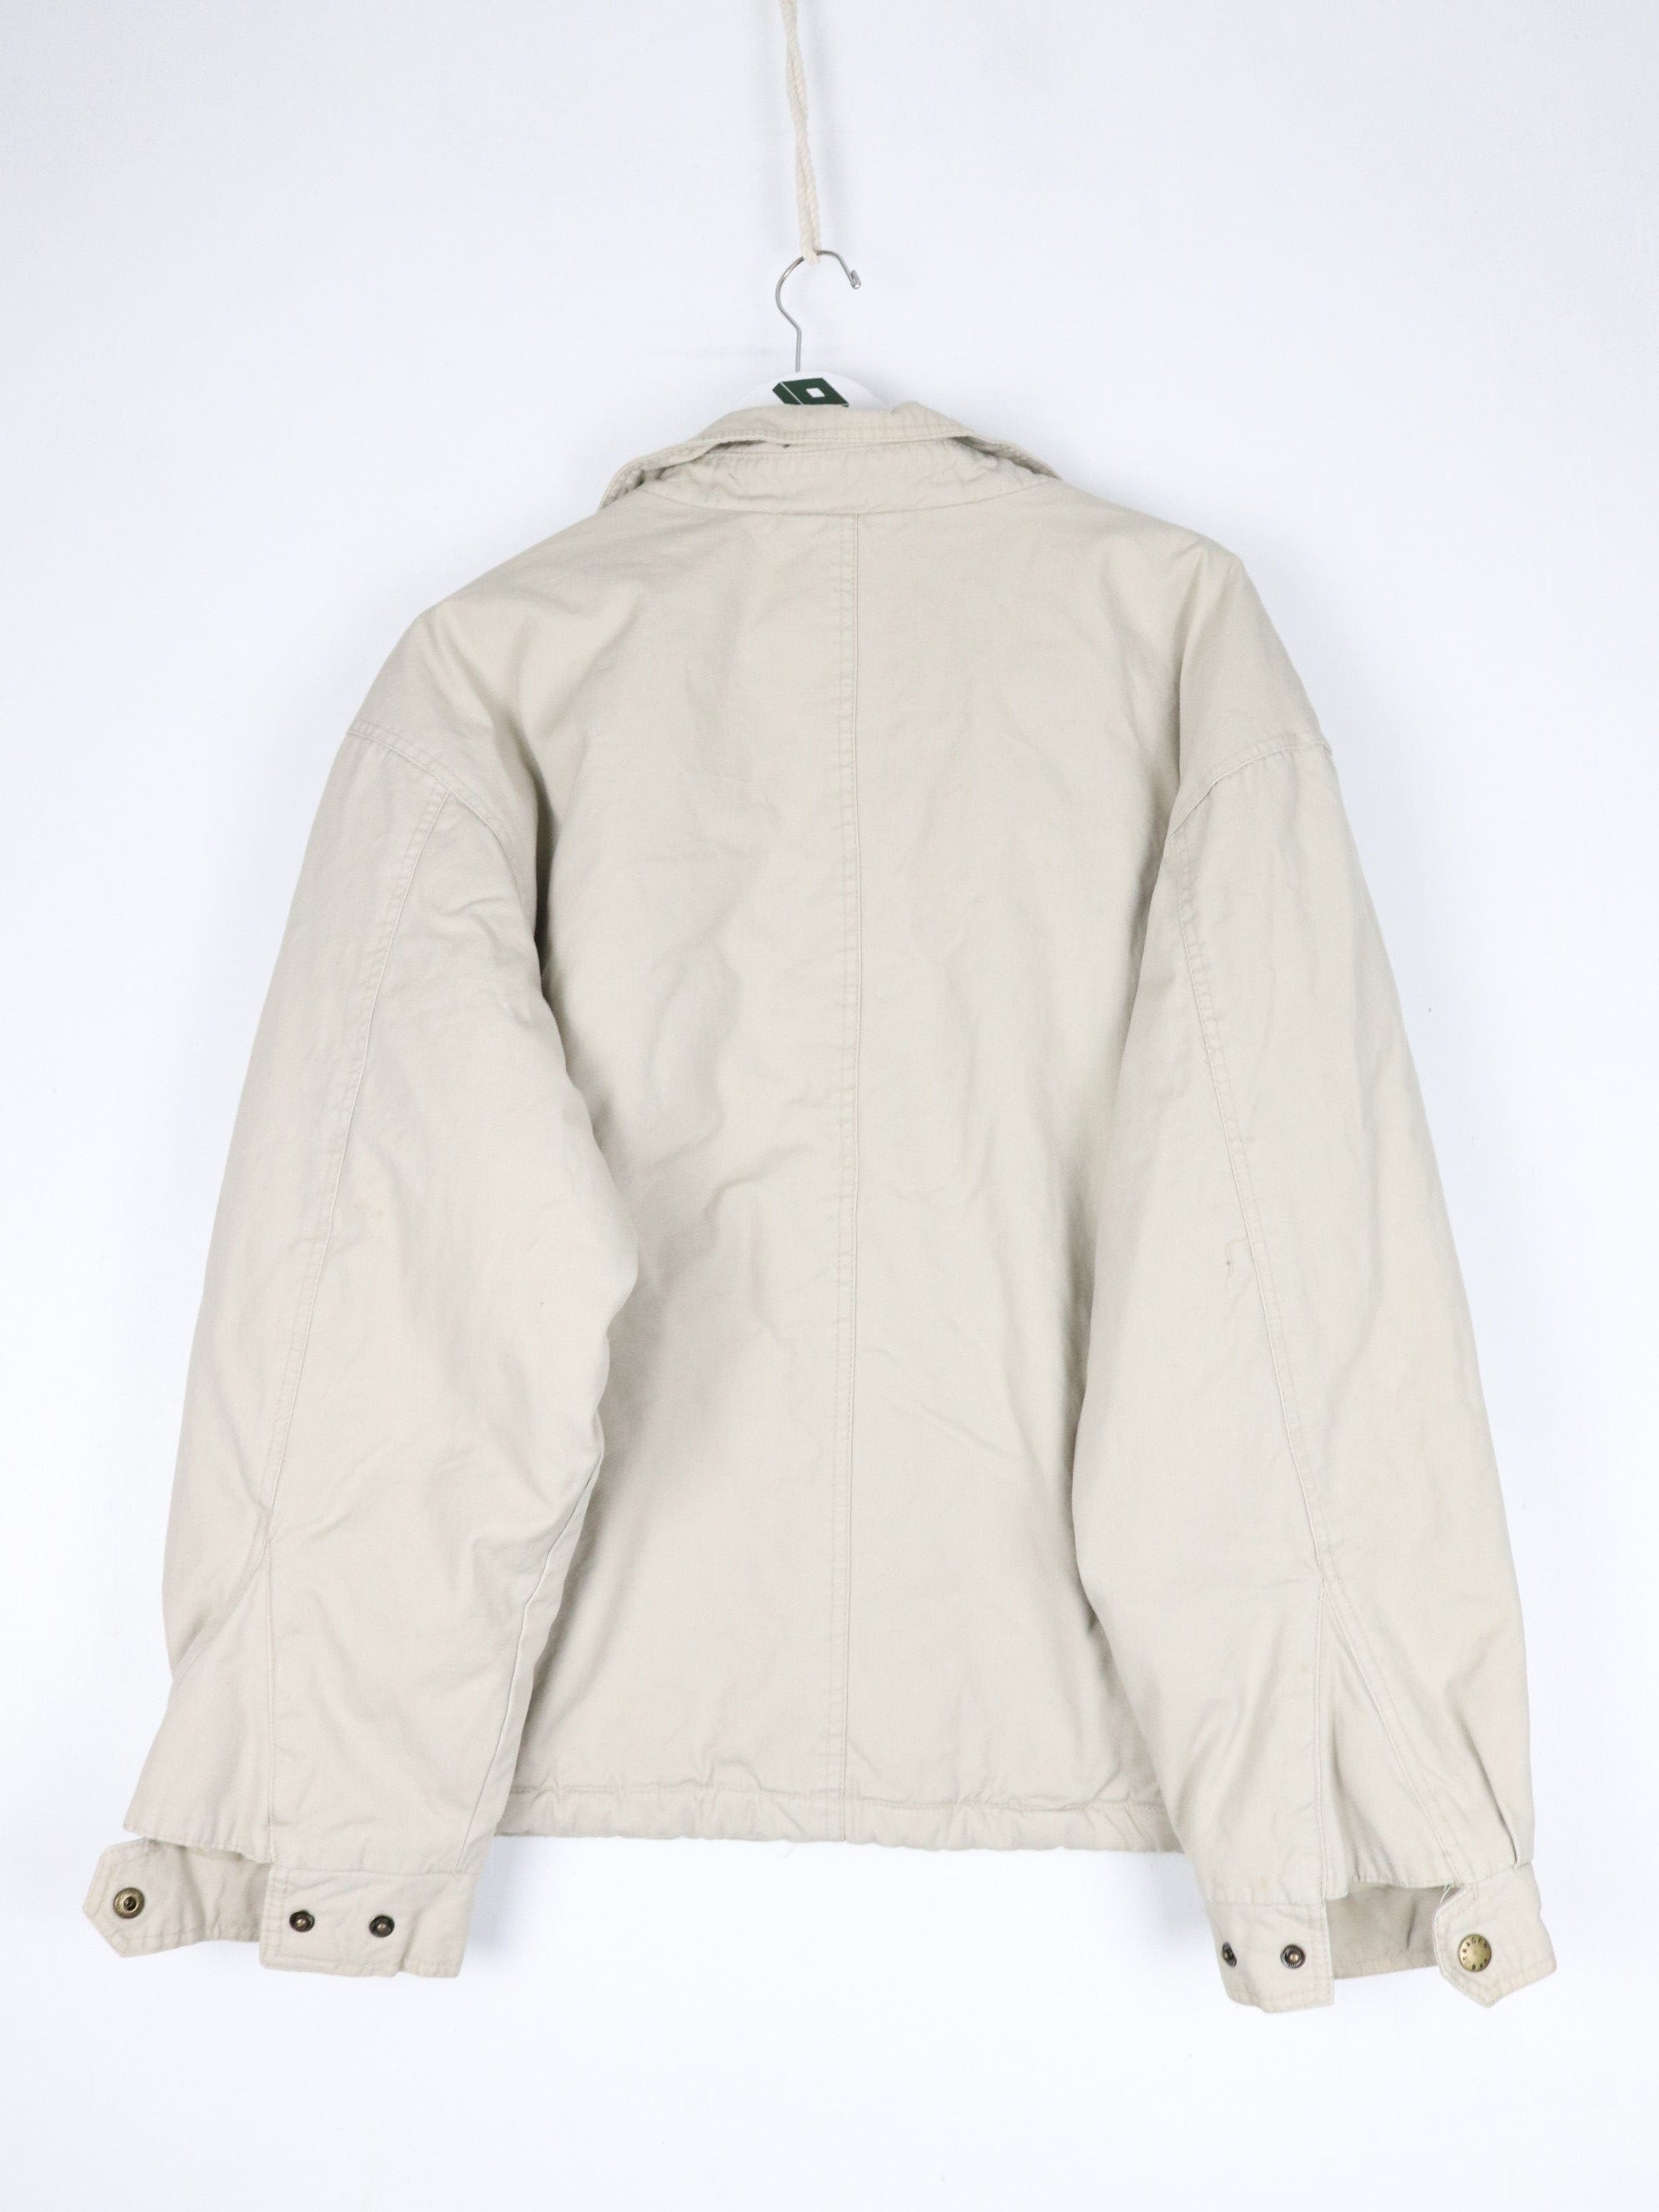 Vintage Orvis Jacket Mens Large Beige Coat Outdoors – Proper Vintage